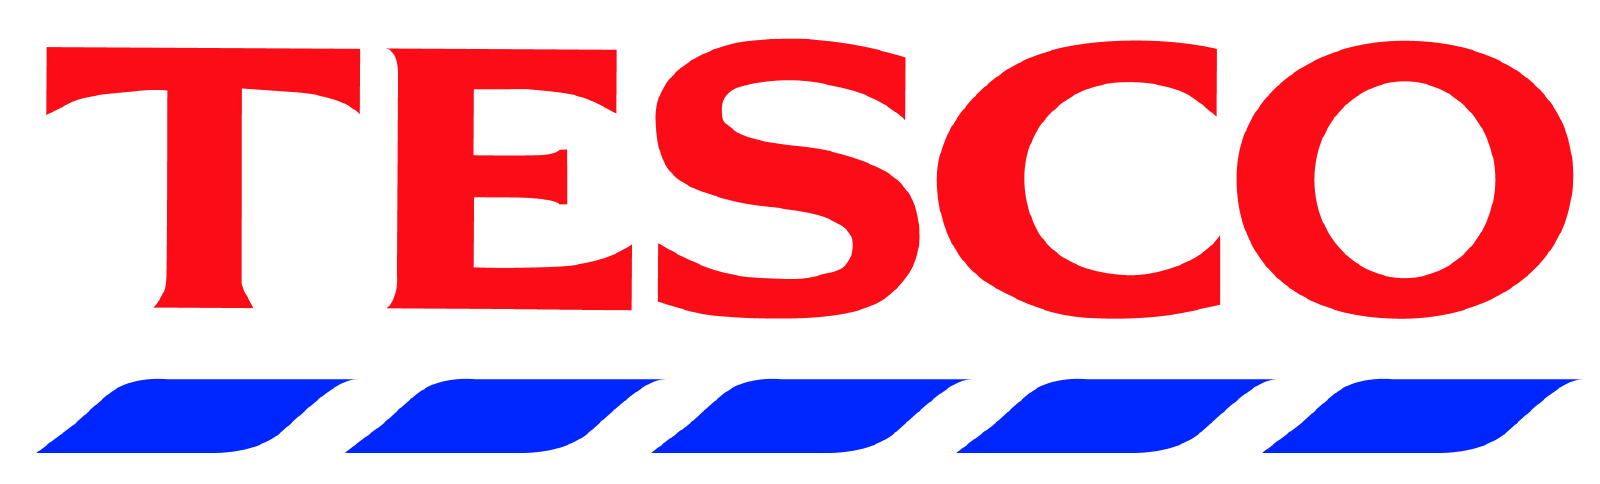 Logo_Tesco.jpg